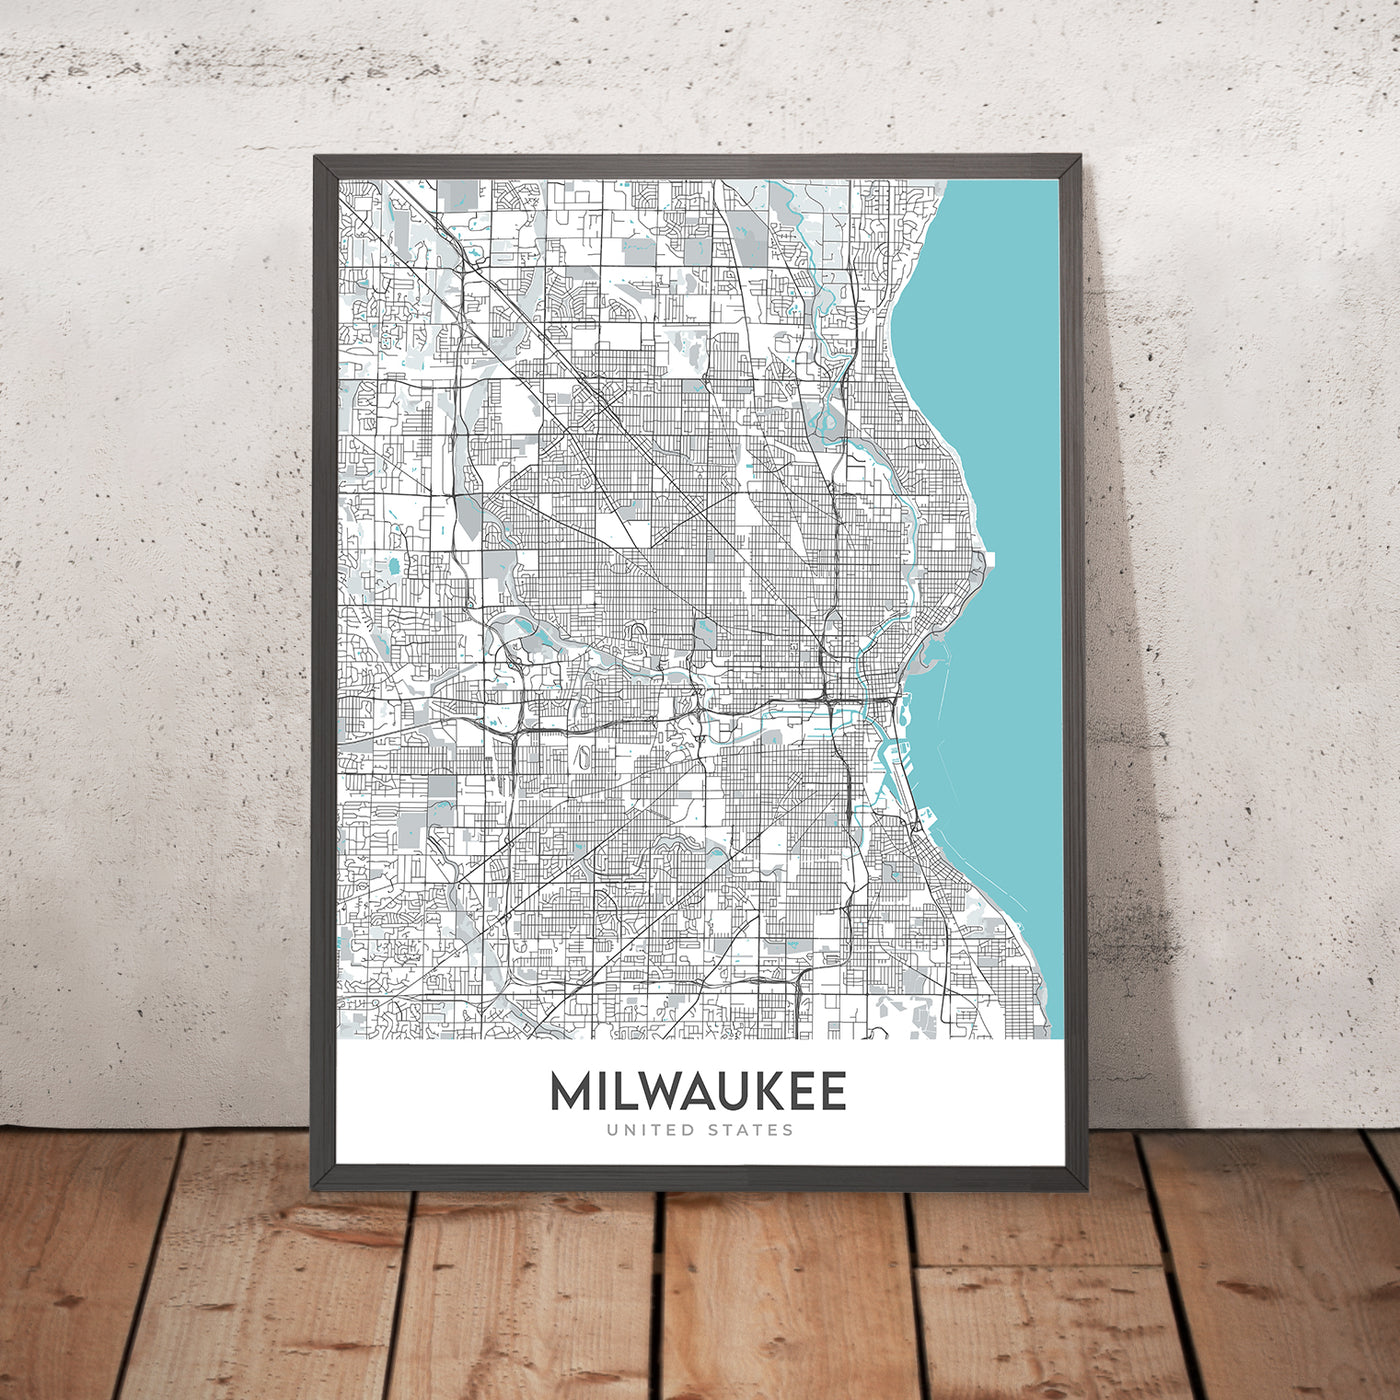 Moderner Stadtplan von Milwaukee, WI: Bay View, Fiserv Forum, Historic Third Ward, Marquette University, Milwaukee County Zoo